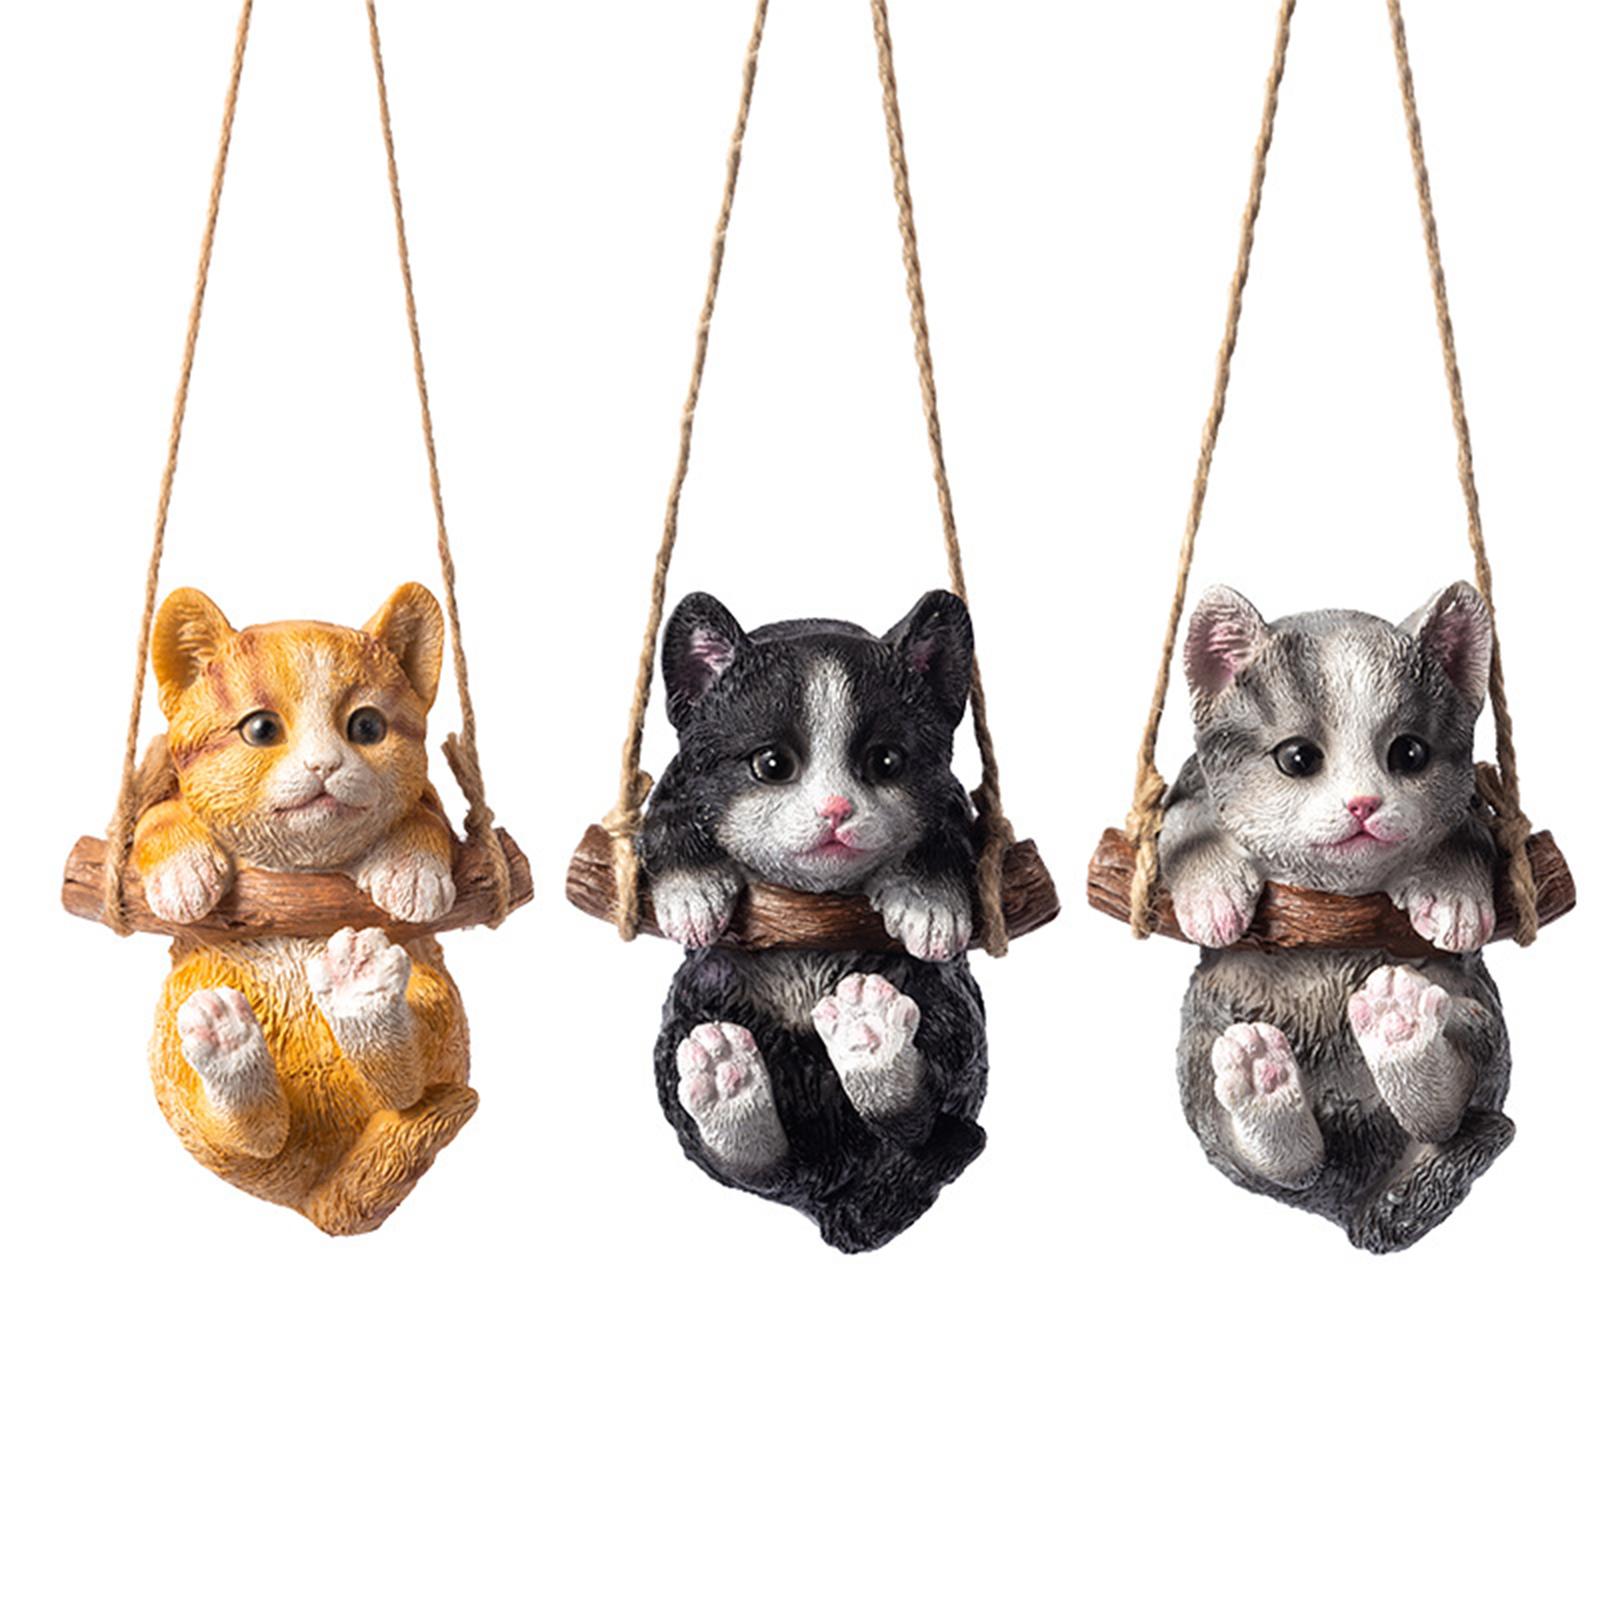 Hanging Swing Cat Statue Garden Figurine Pendant Decorative for Bedroom Home Orange